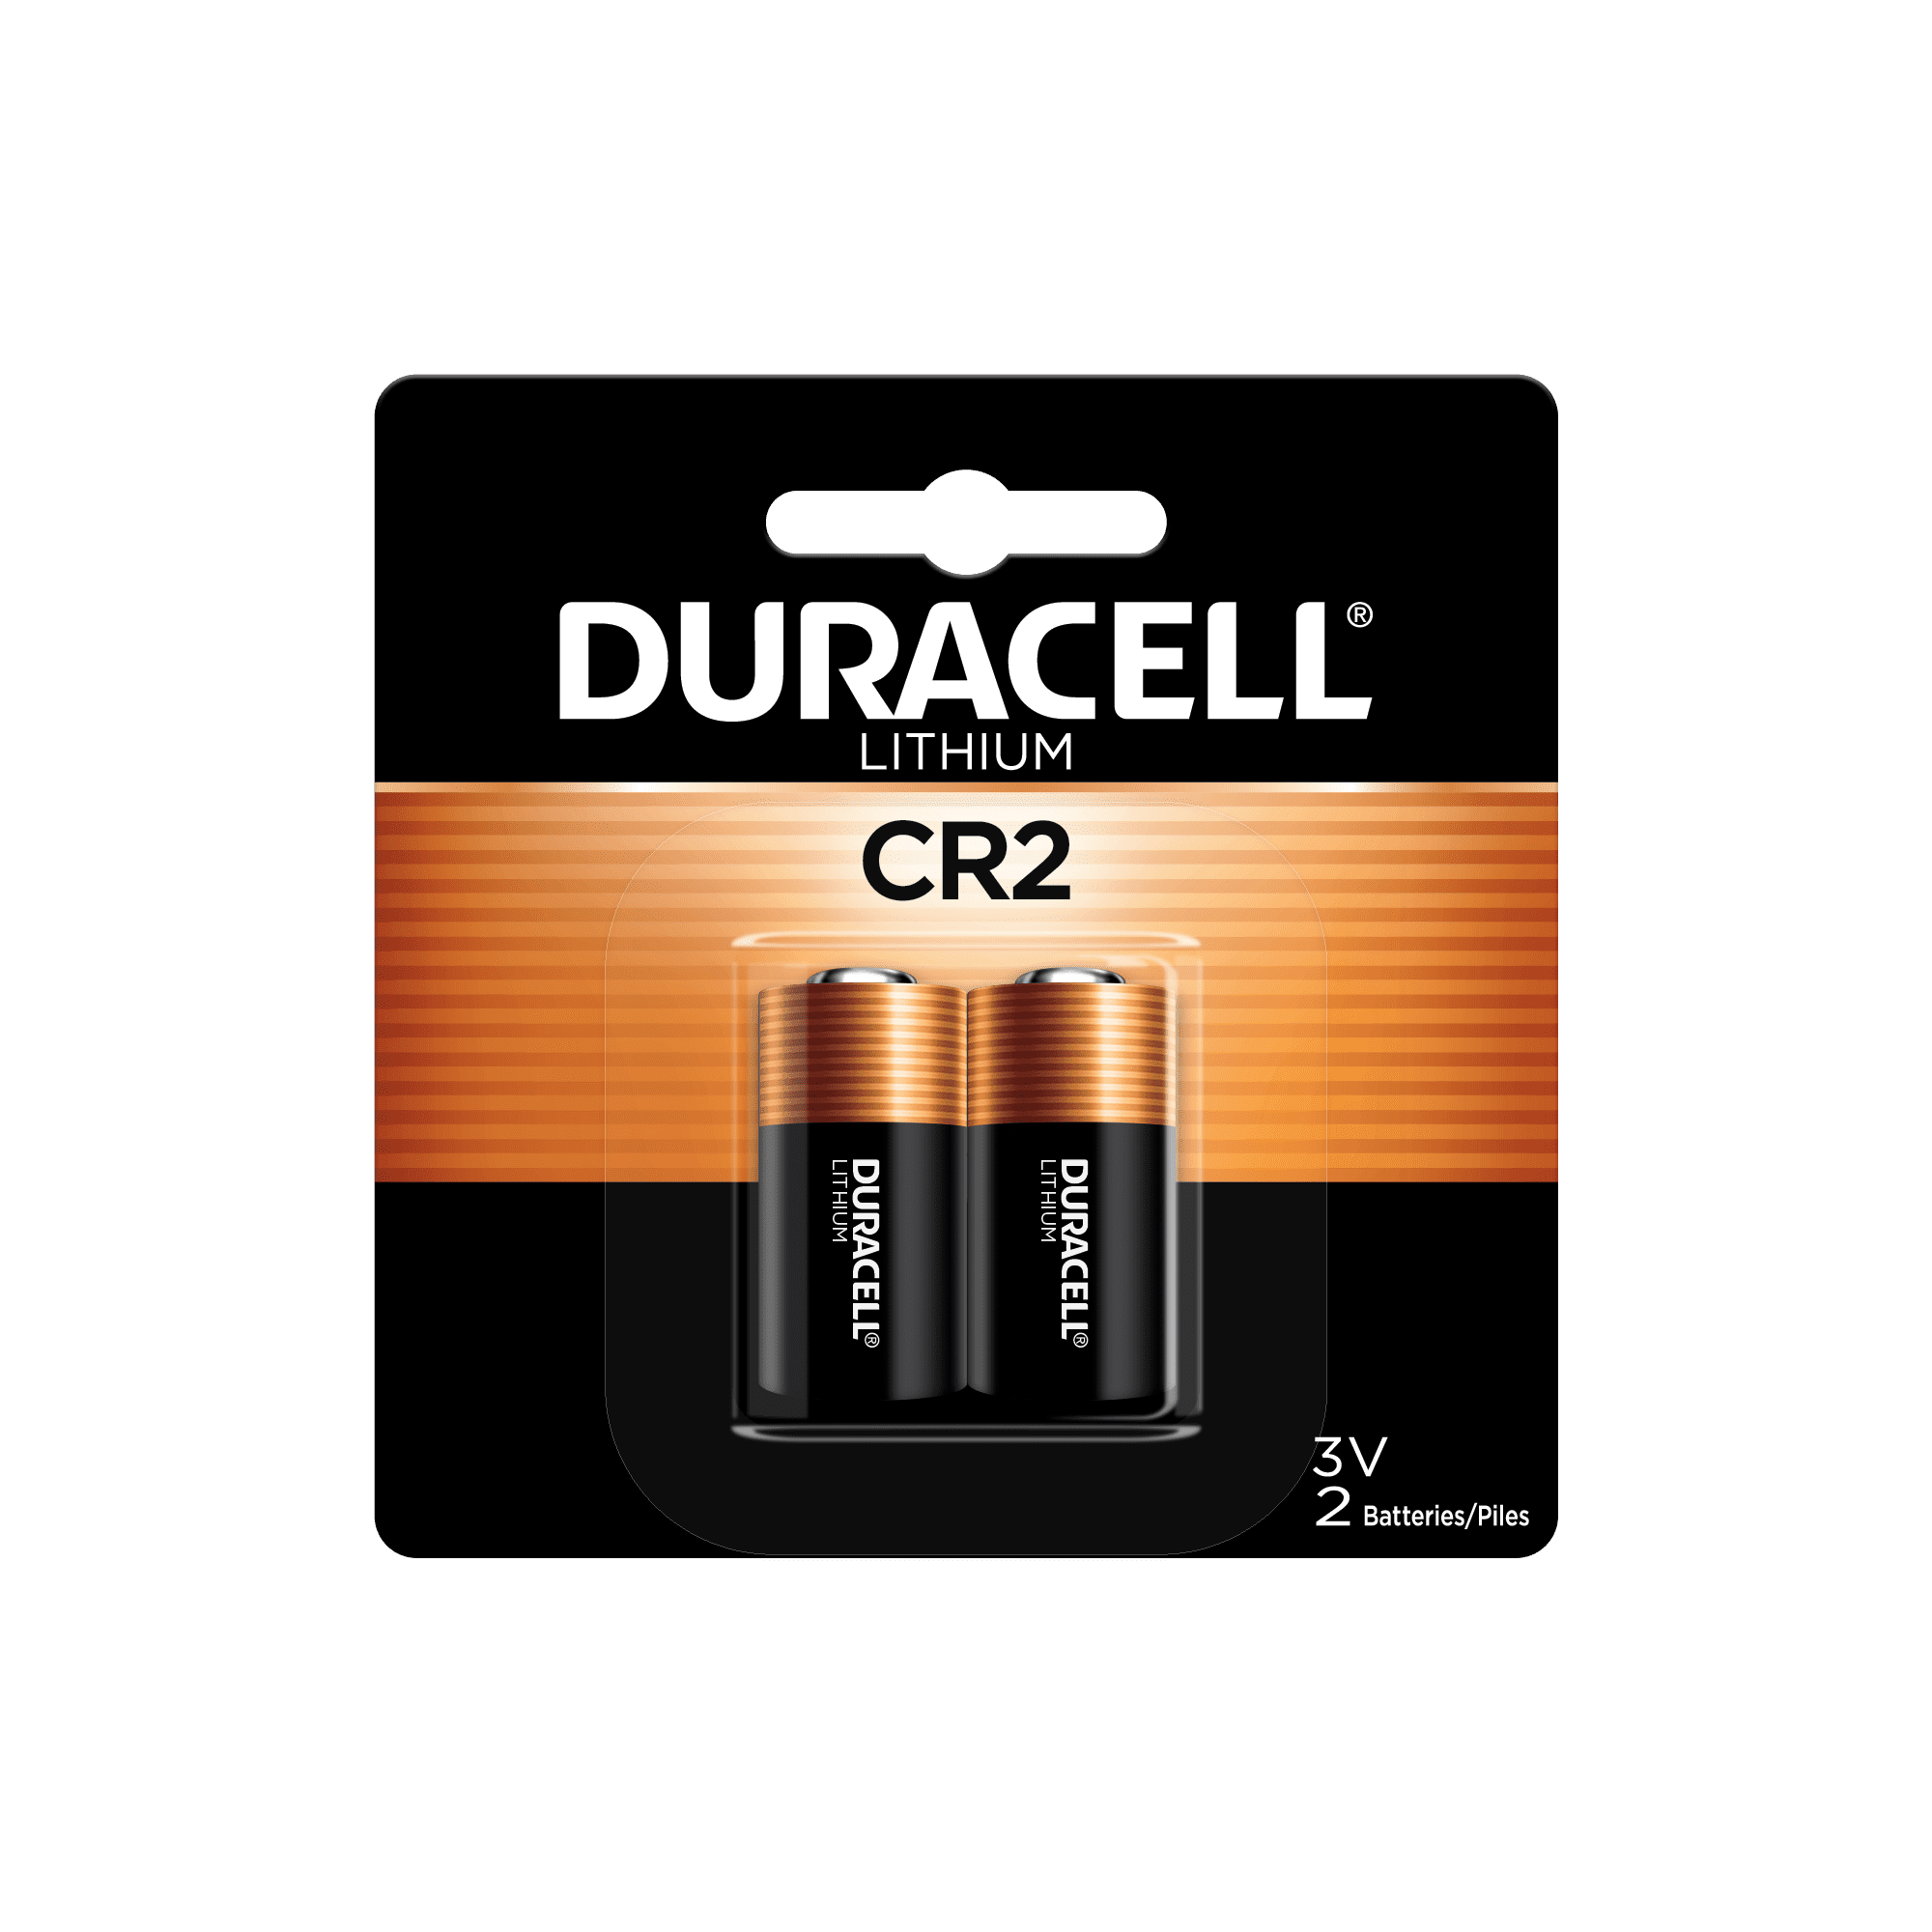 Uforudsete omstændigheder Fantastiske Kvadrant Duracell CR2 High Performance 3V Lithium Battery, 2 Pack, Long-Lasting -  Walmart.com